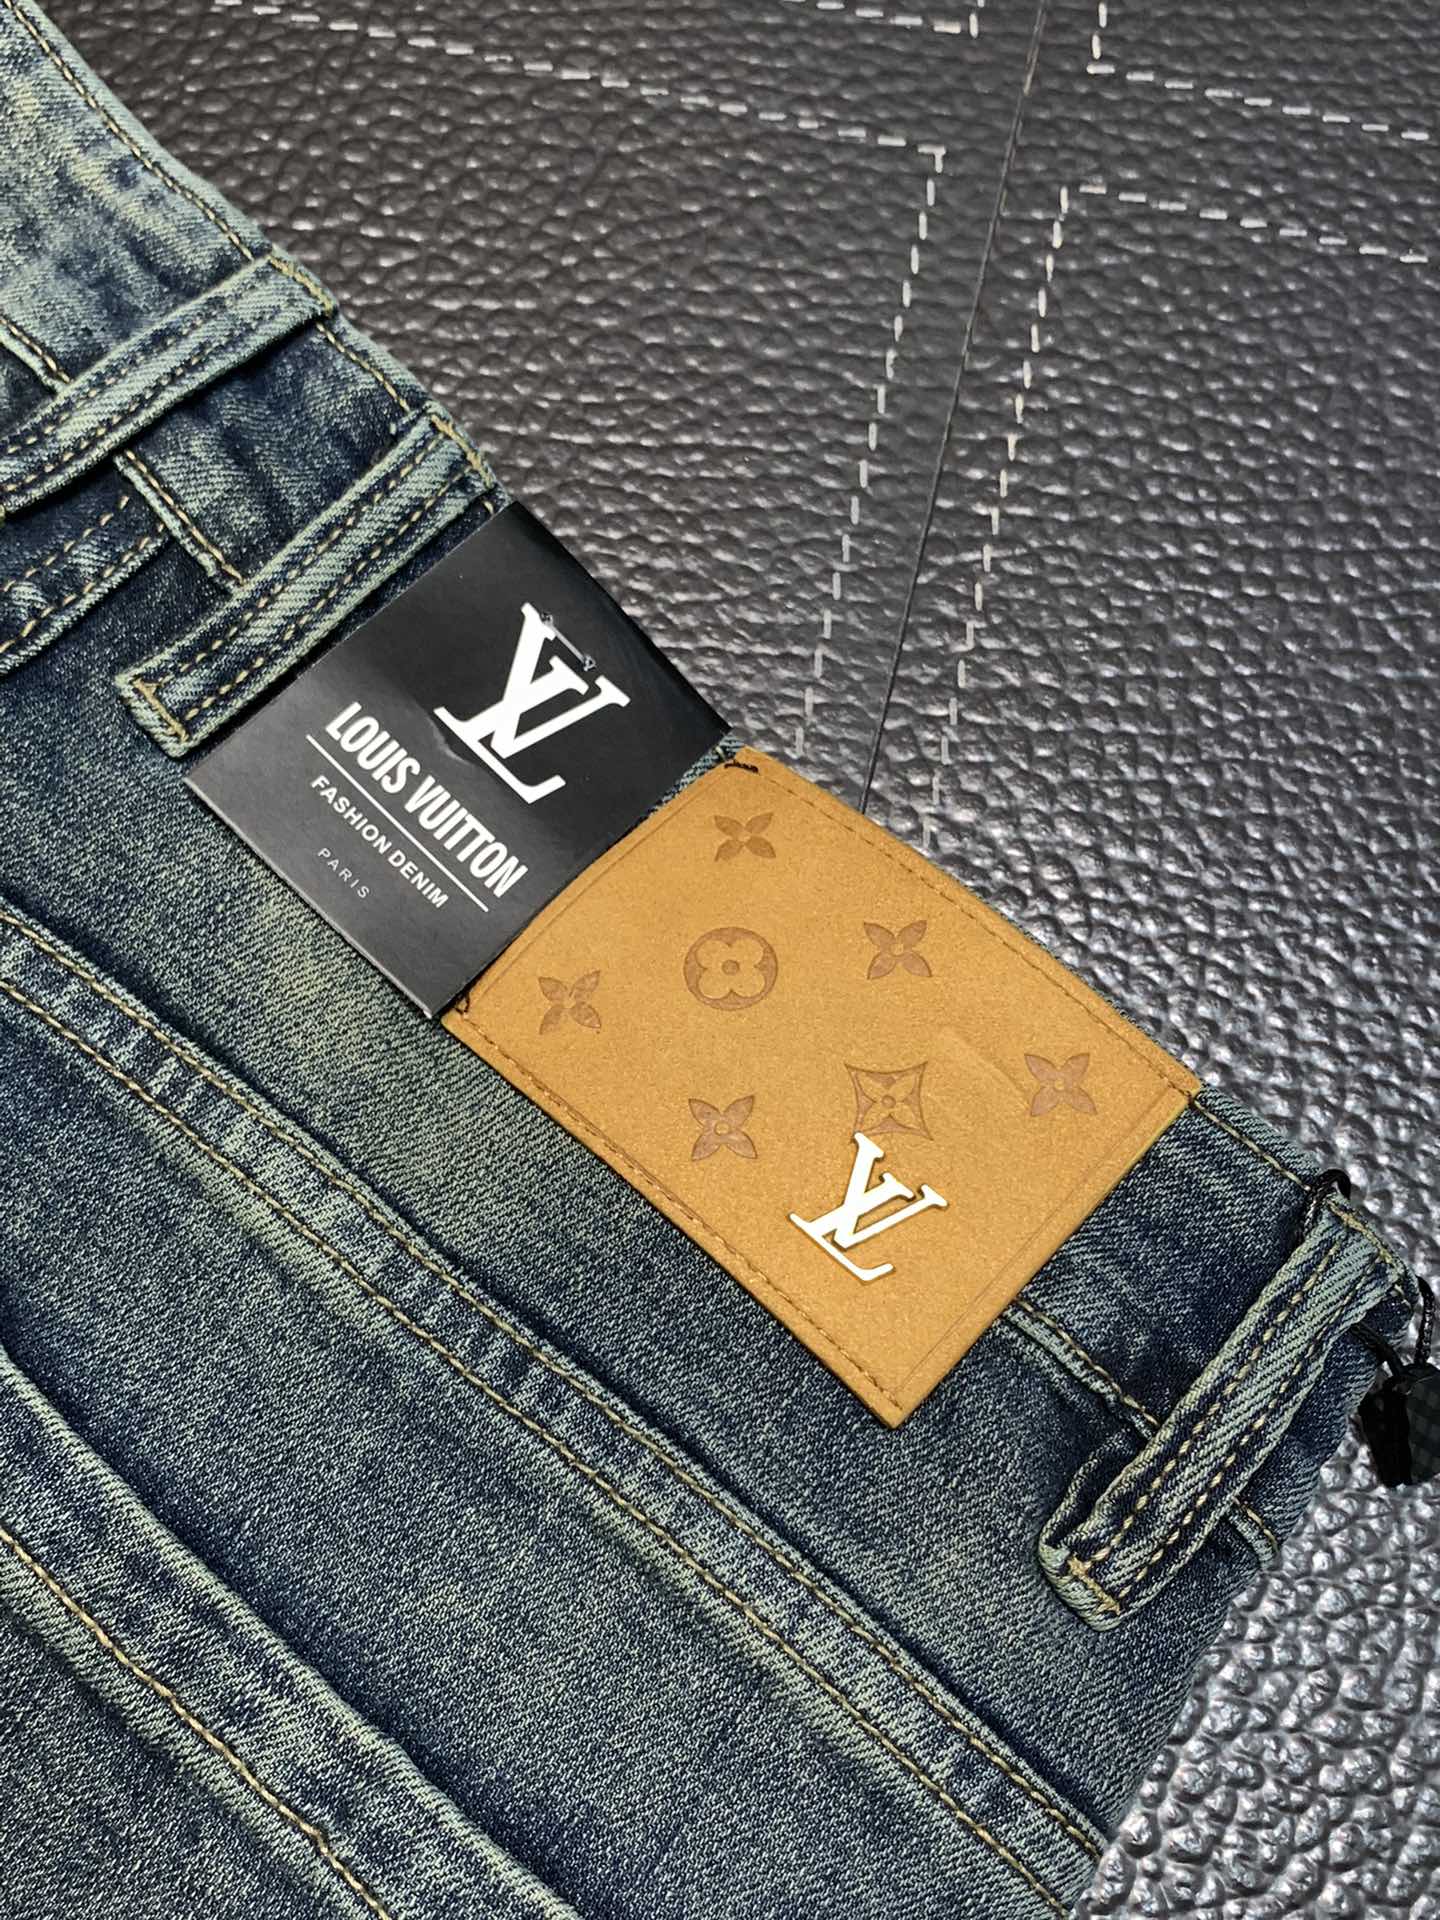 LV路易威登独家专供新款休闲牛仔裤高端版本专柜定制面料透气舒适度高细节无可挑剔品牌元素设计理念体现高品质